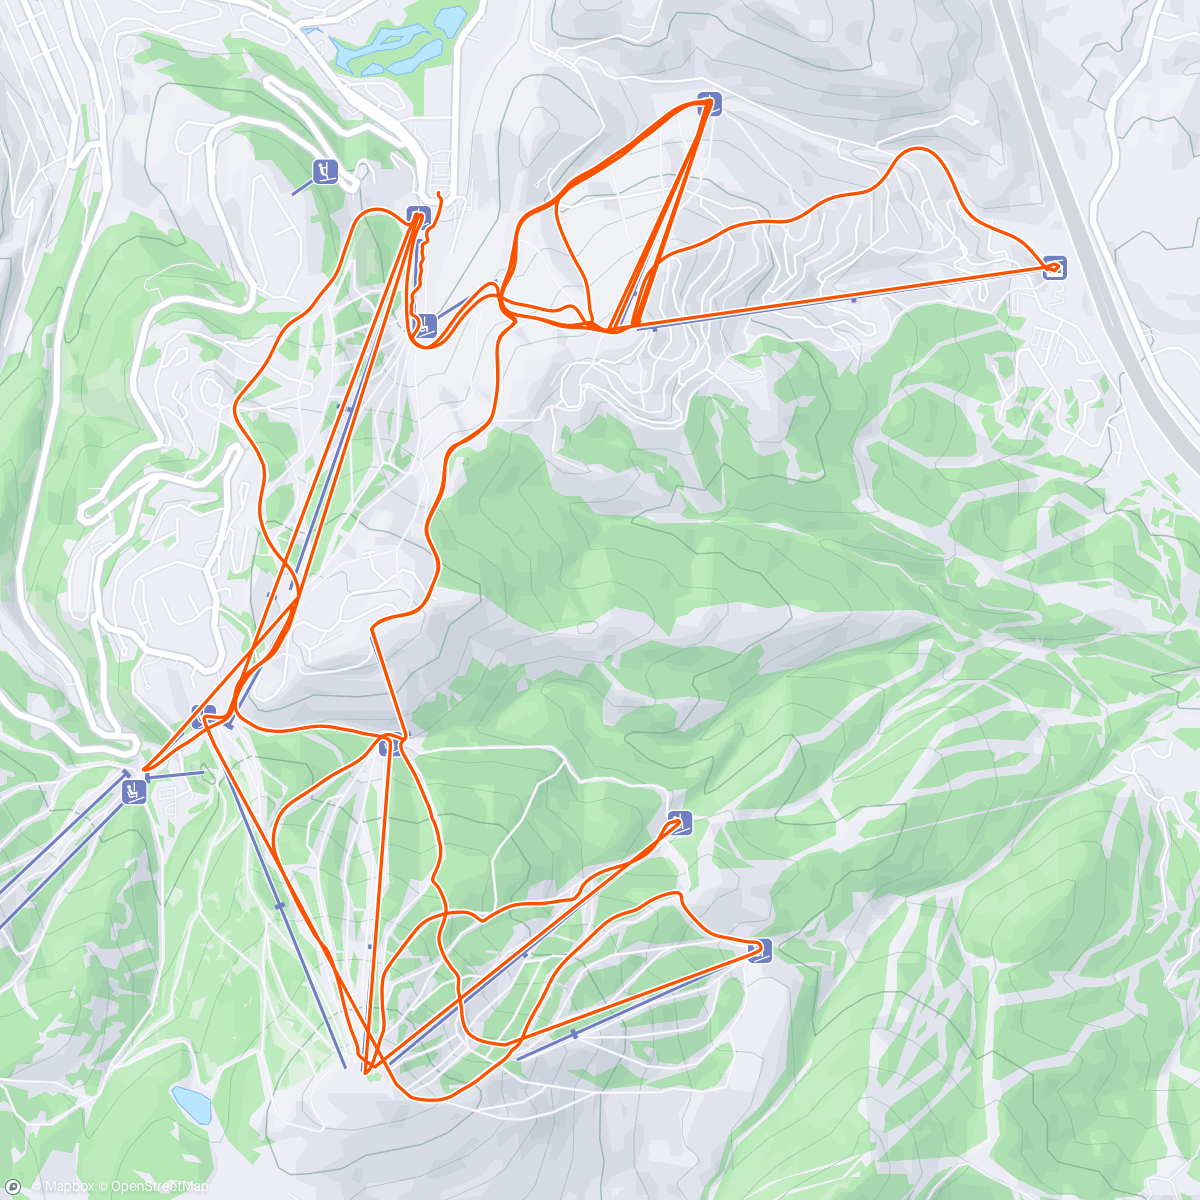 「Spring ski!」活動的地圖